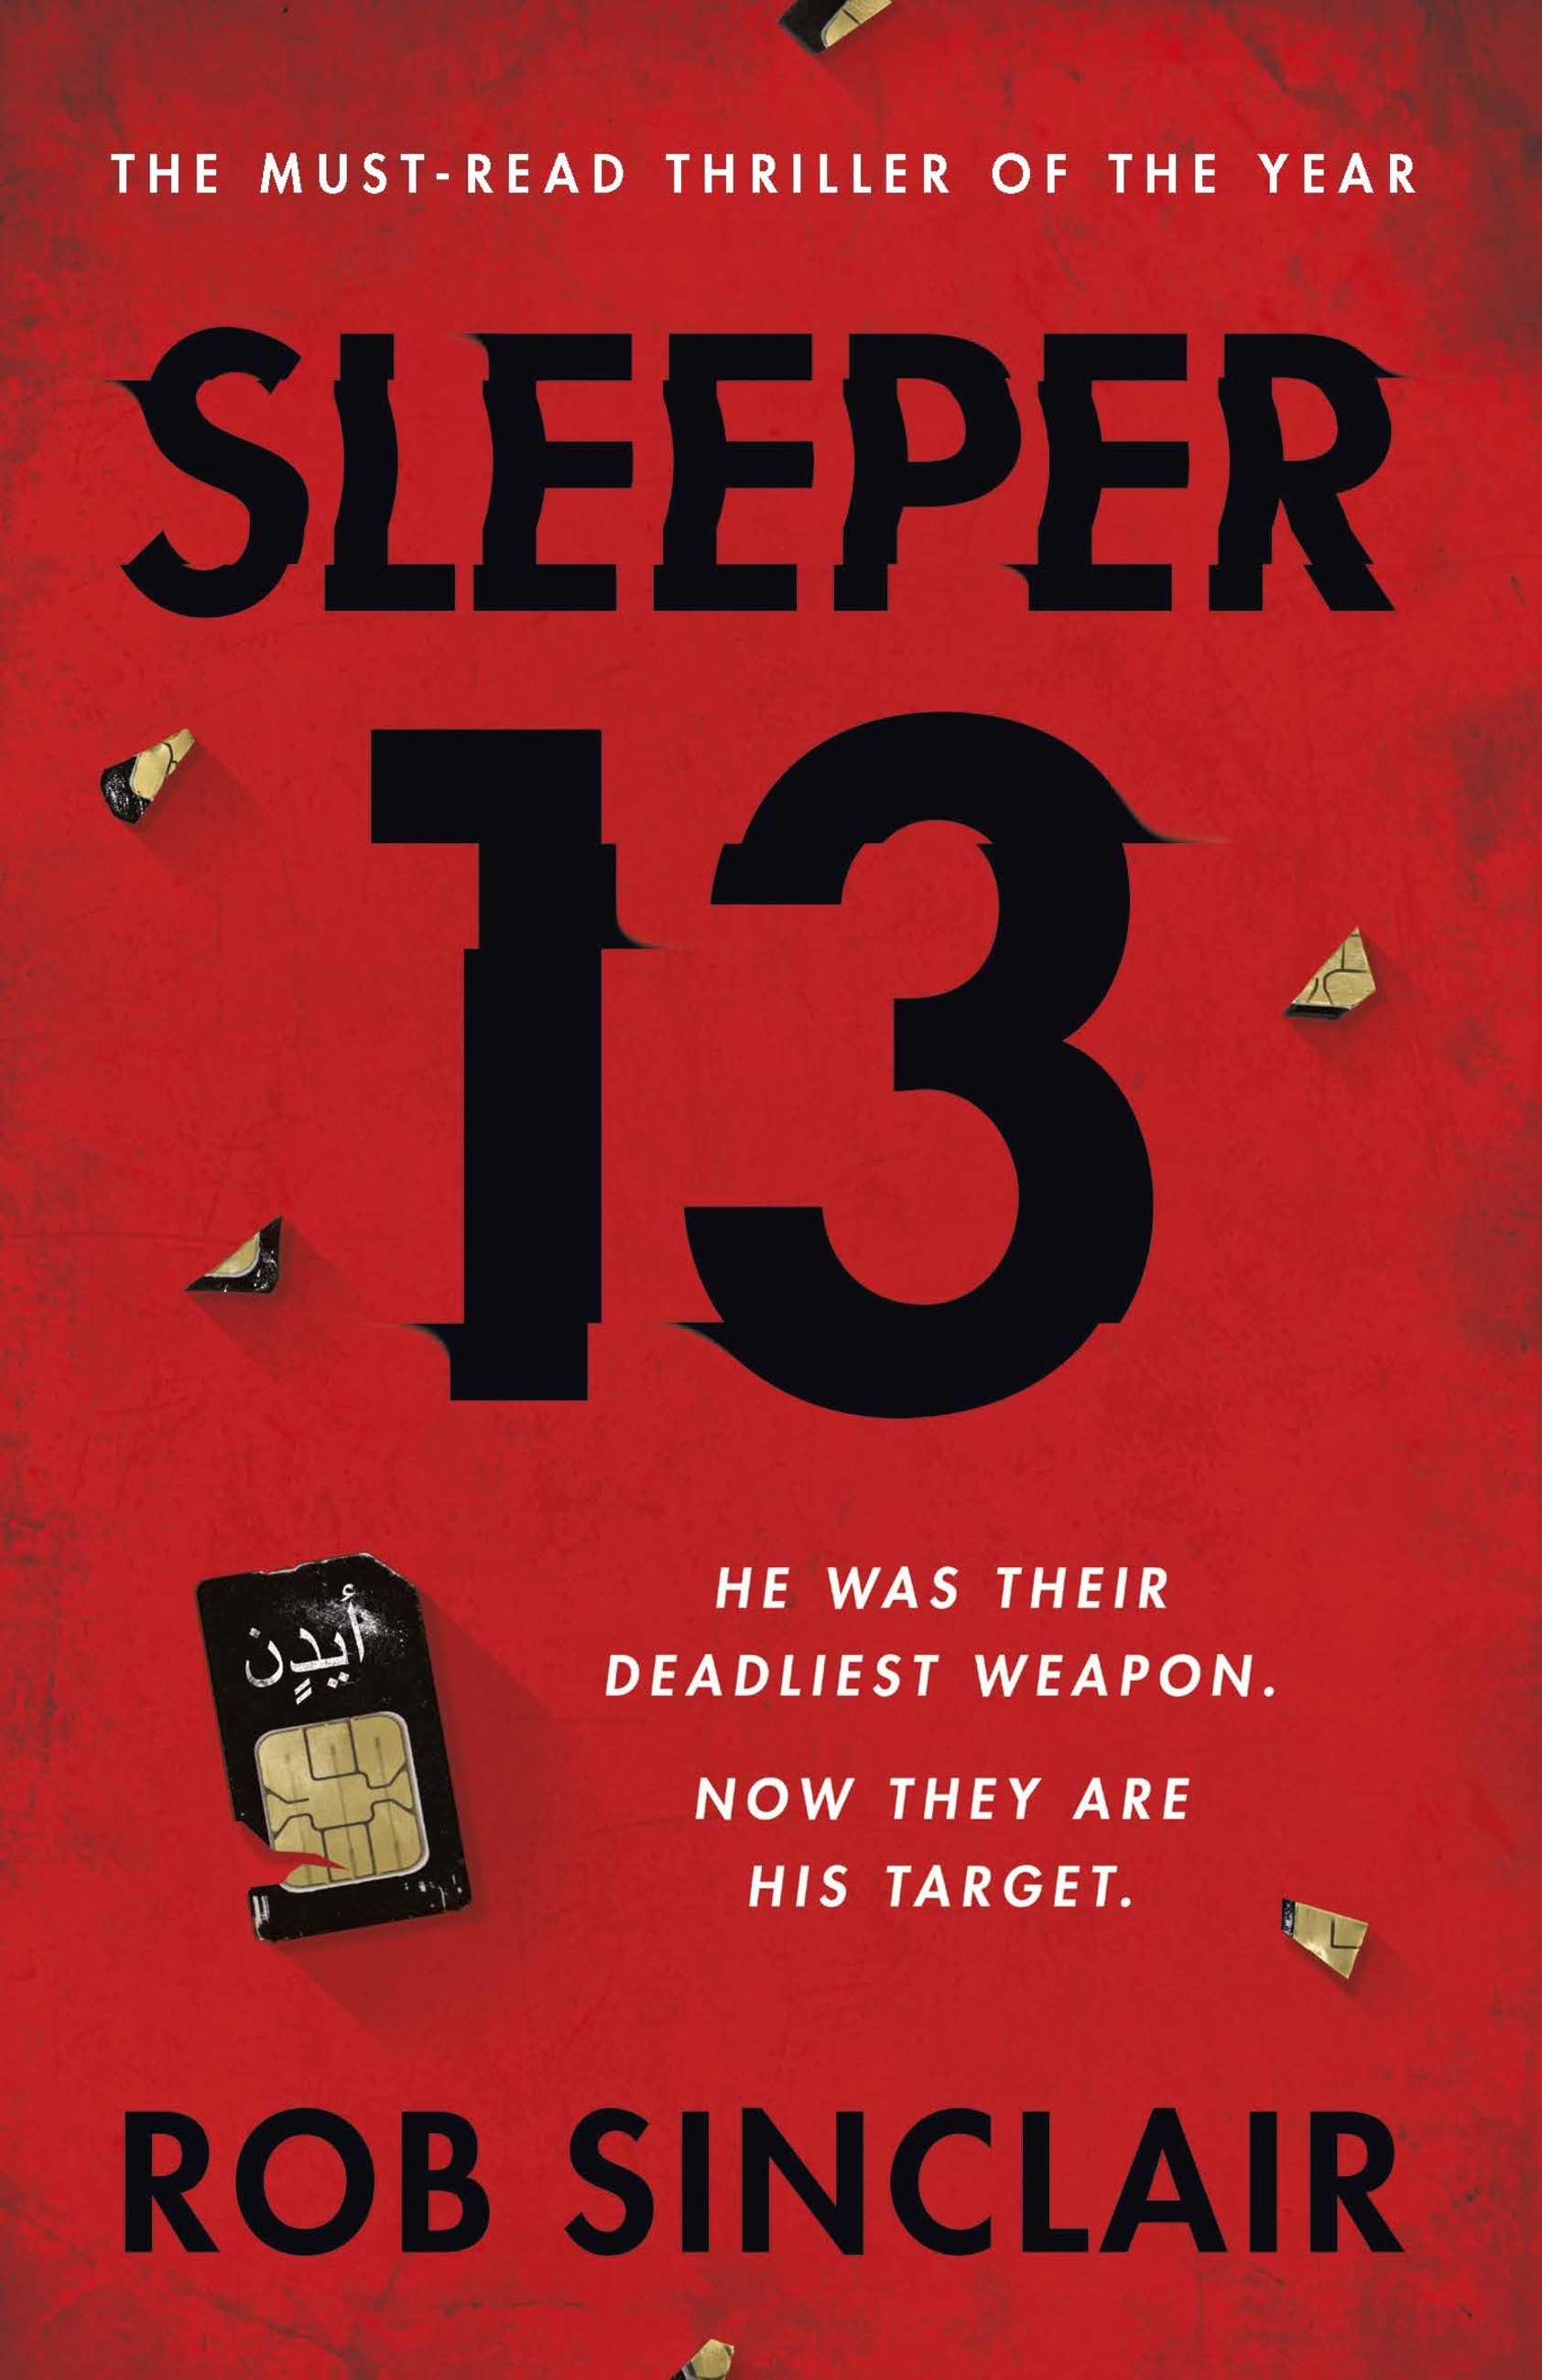 Sleeper 13